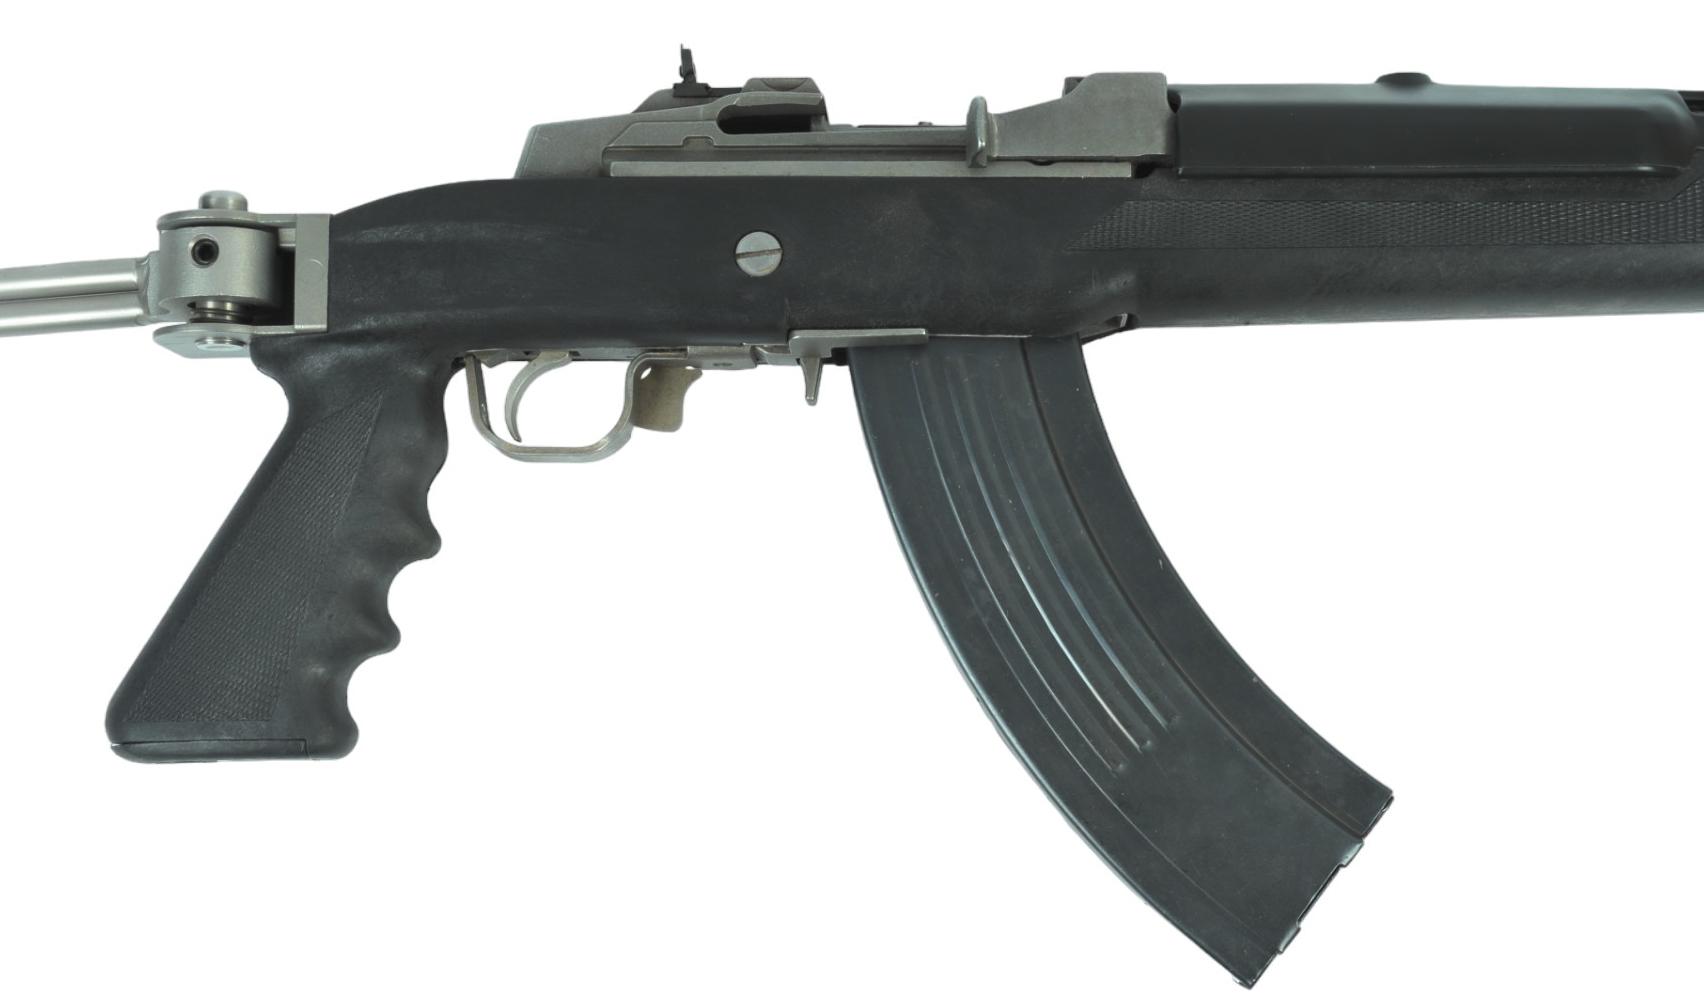 Ruger Mini-30 7.62x39mm Semi-Automatic Rifle - FFL # 189-60984 (MGX1)